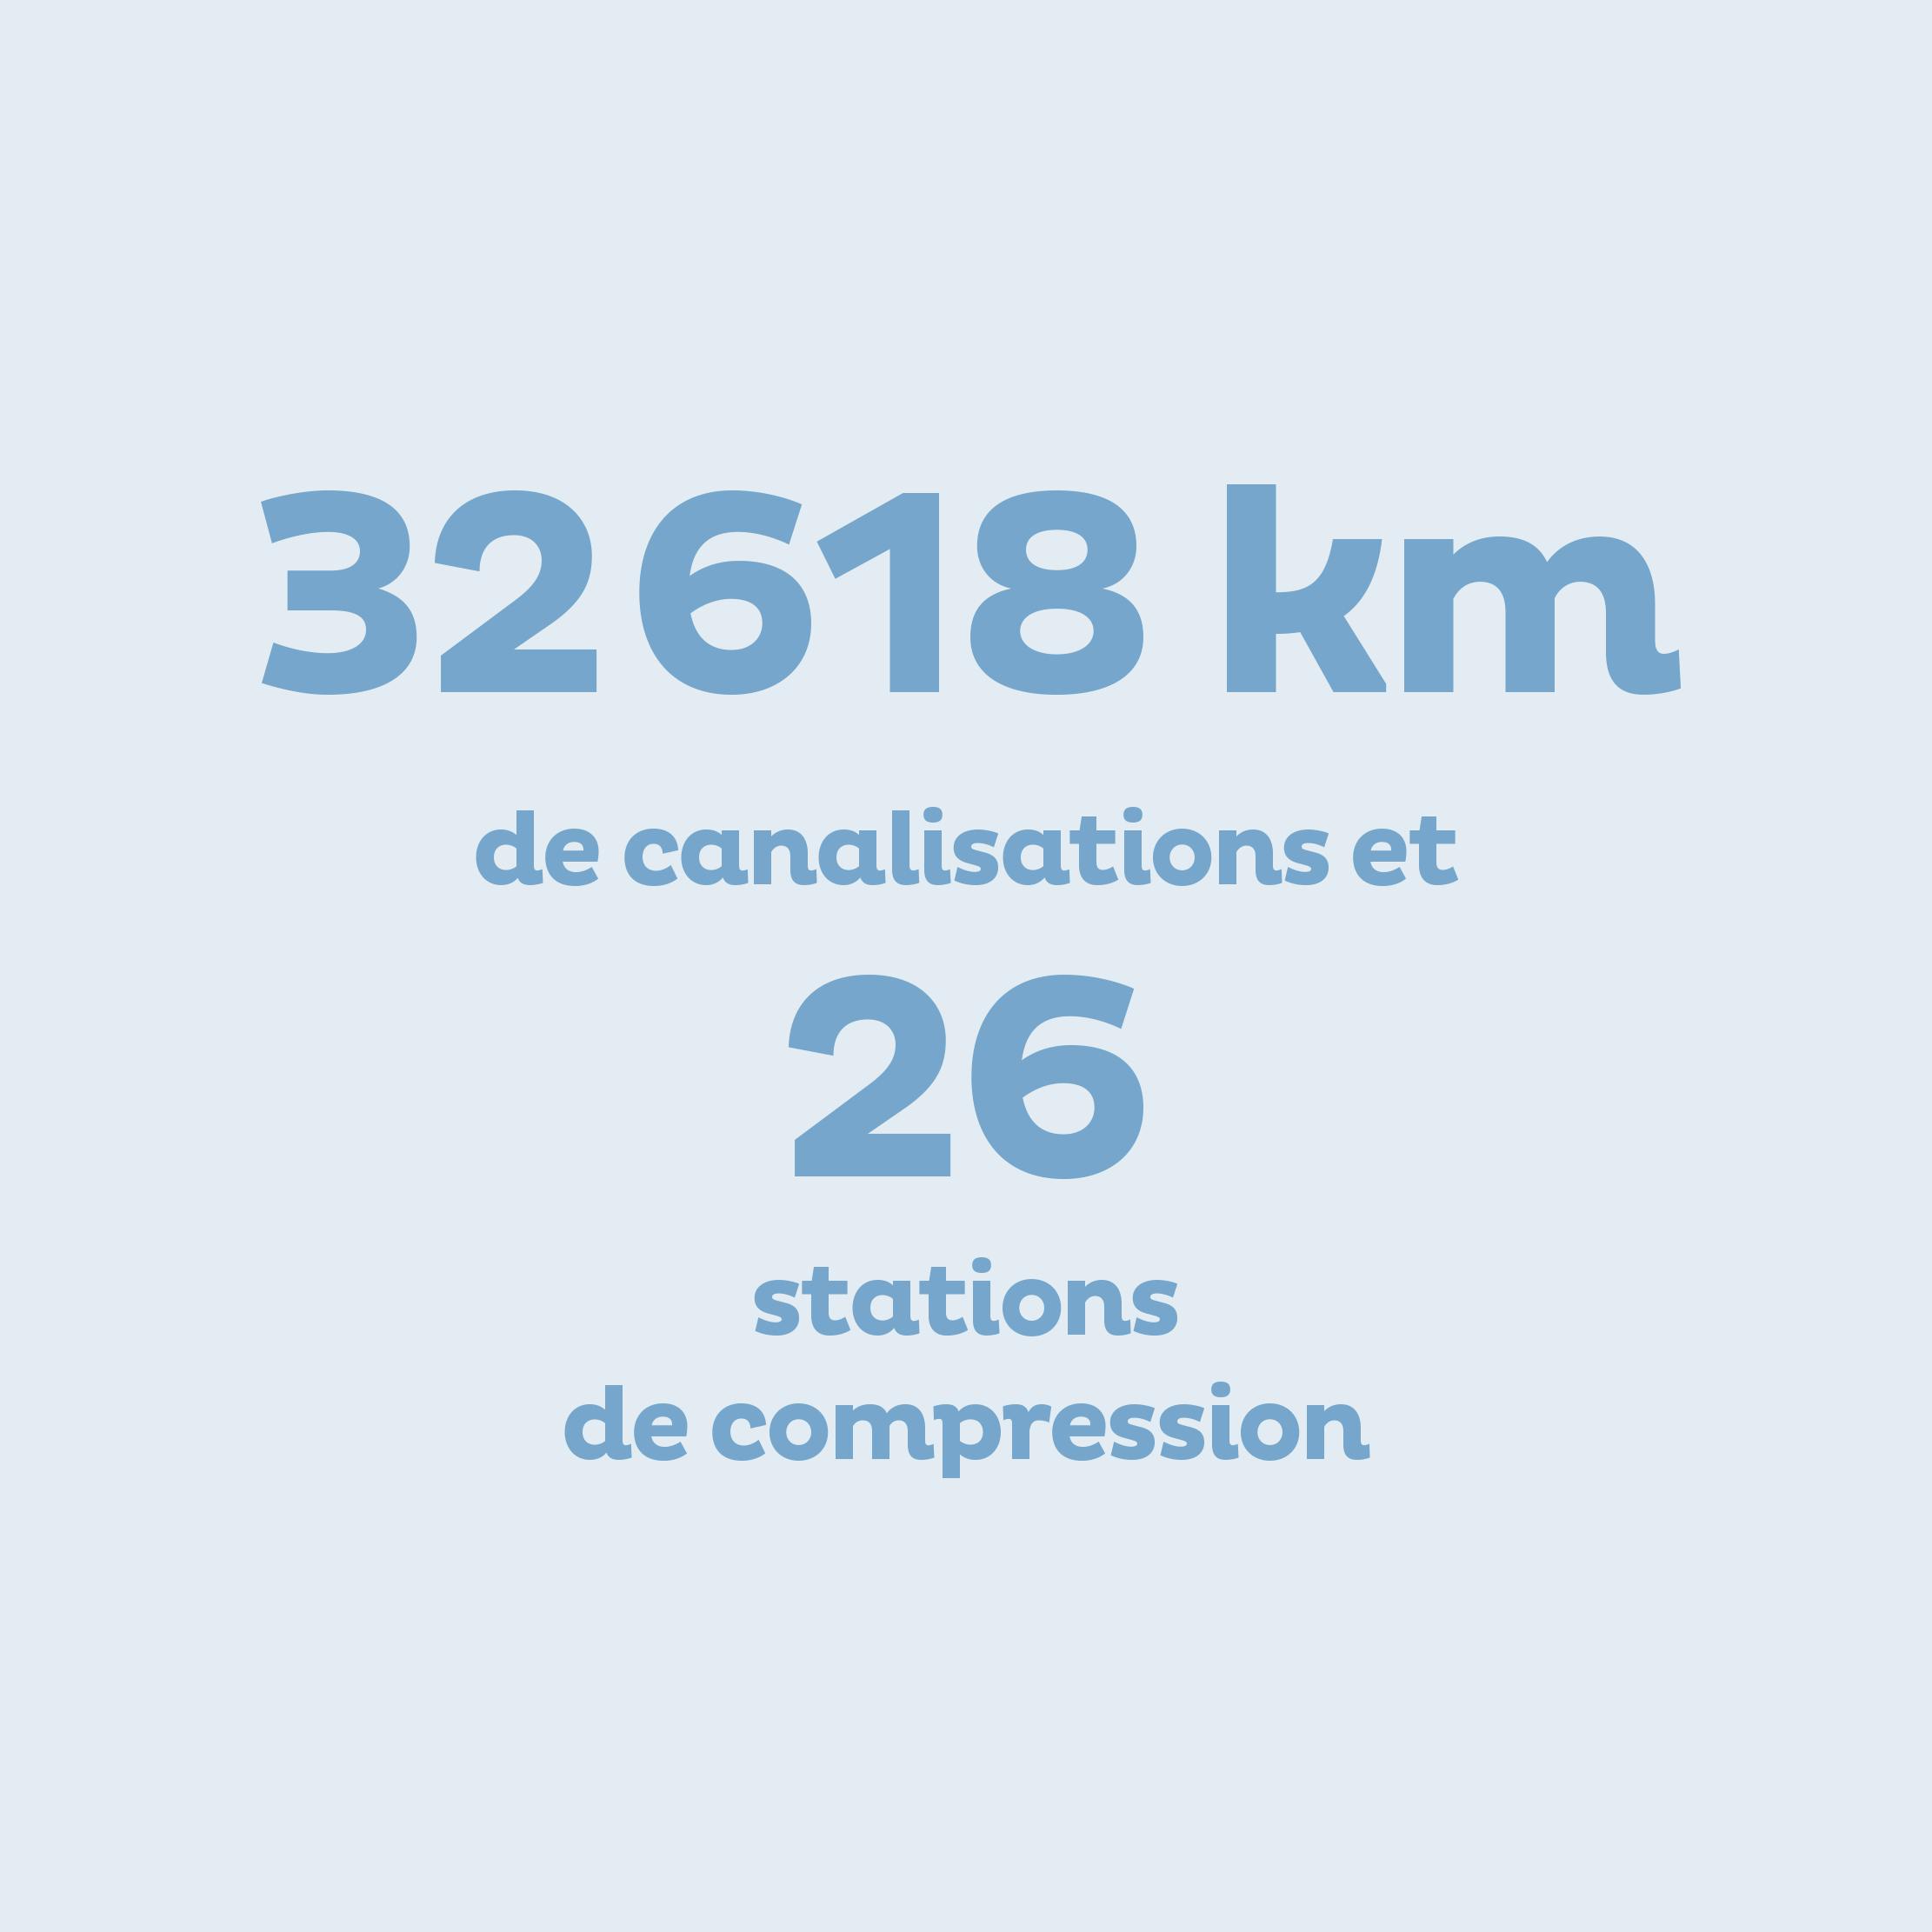 32 618 km de canalisations et 26 stations de compression.